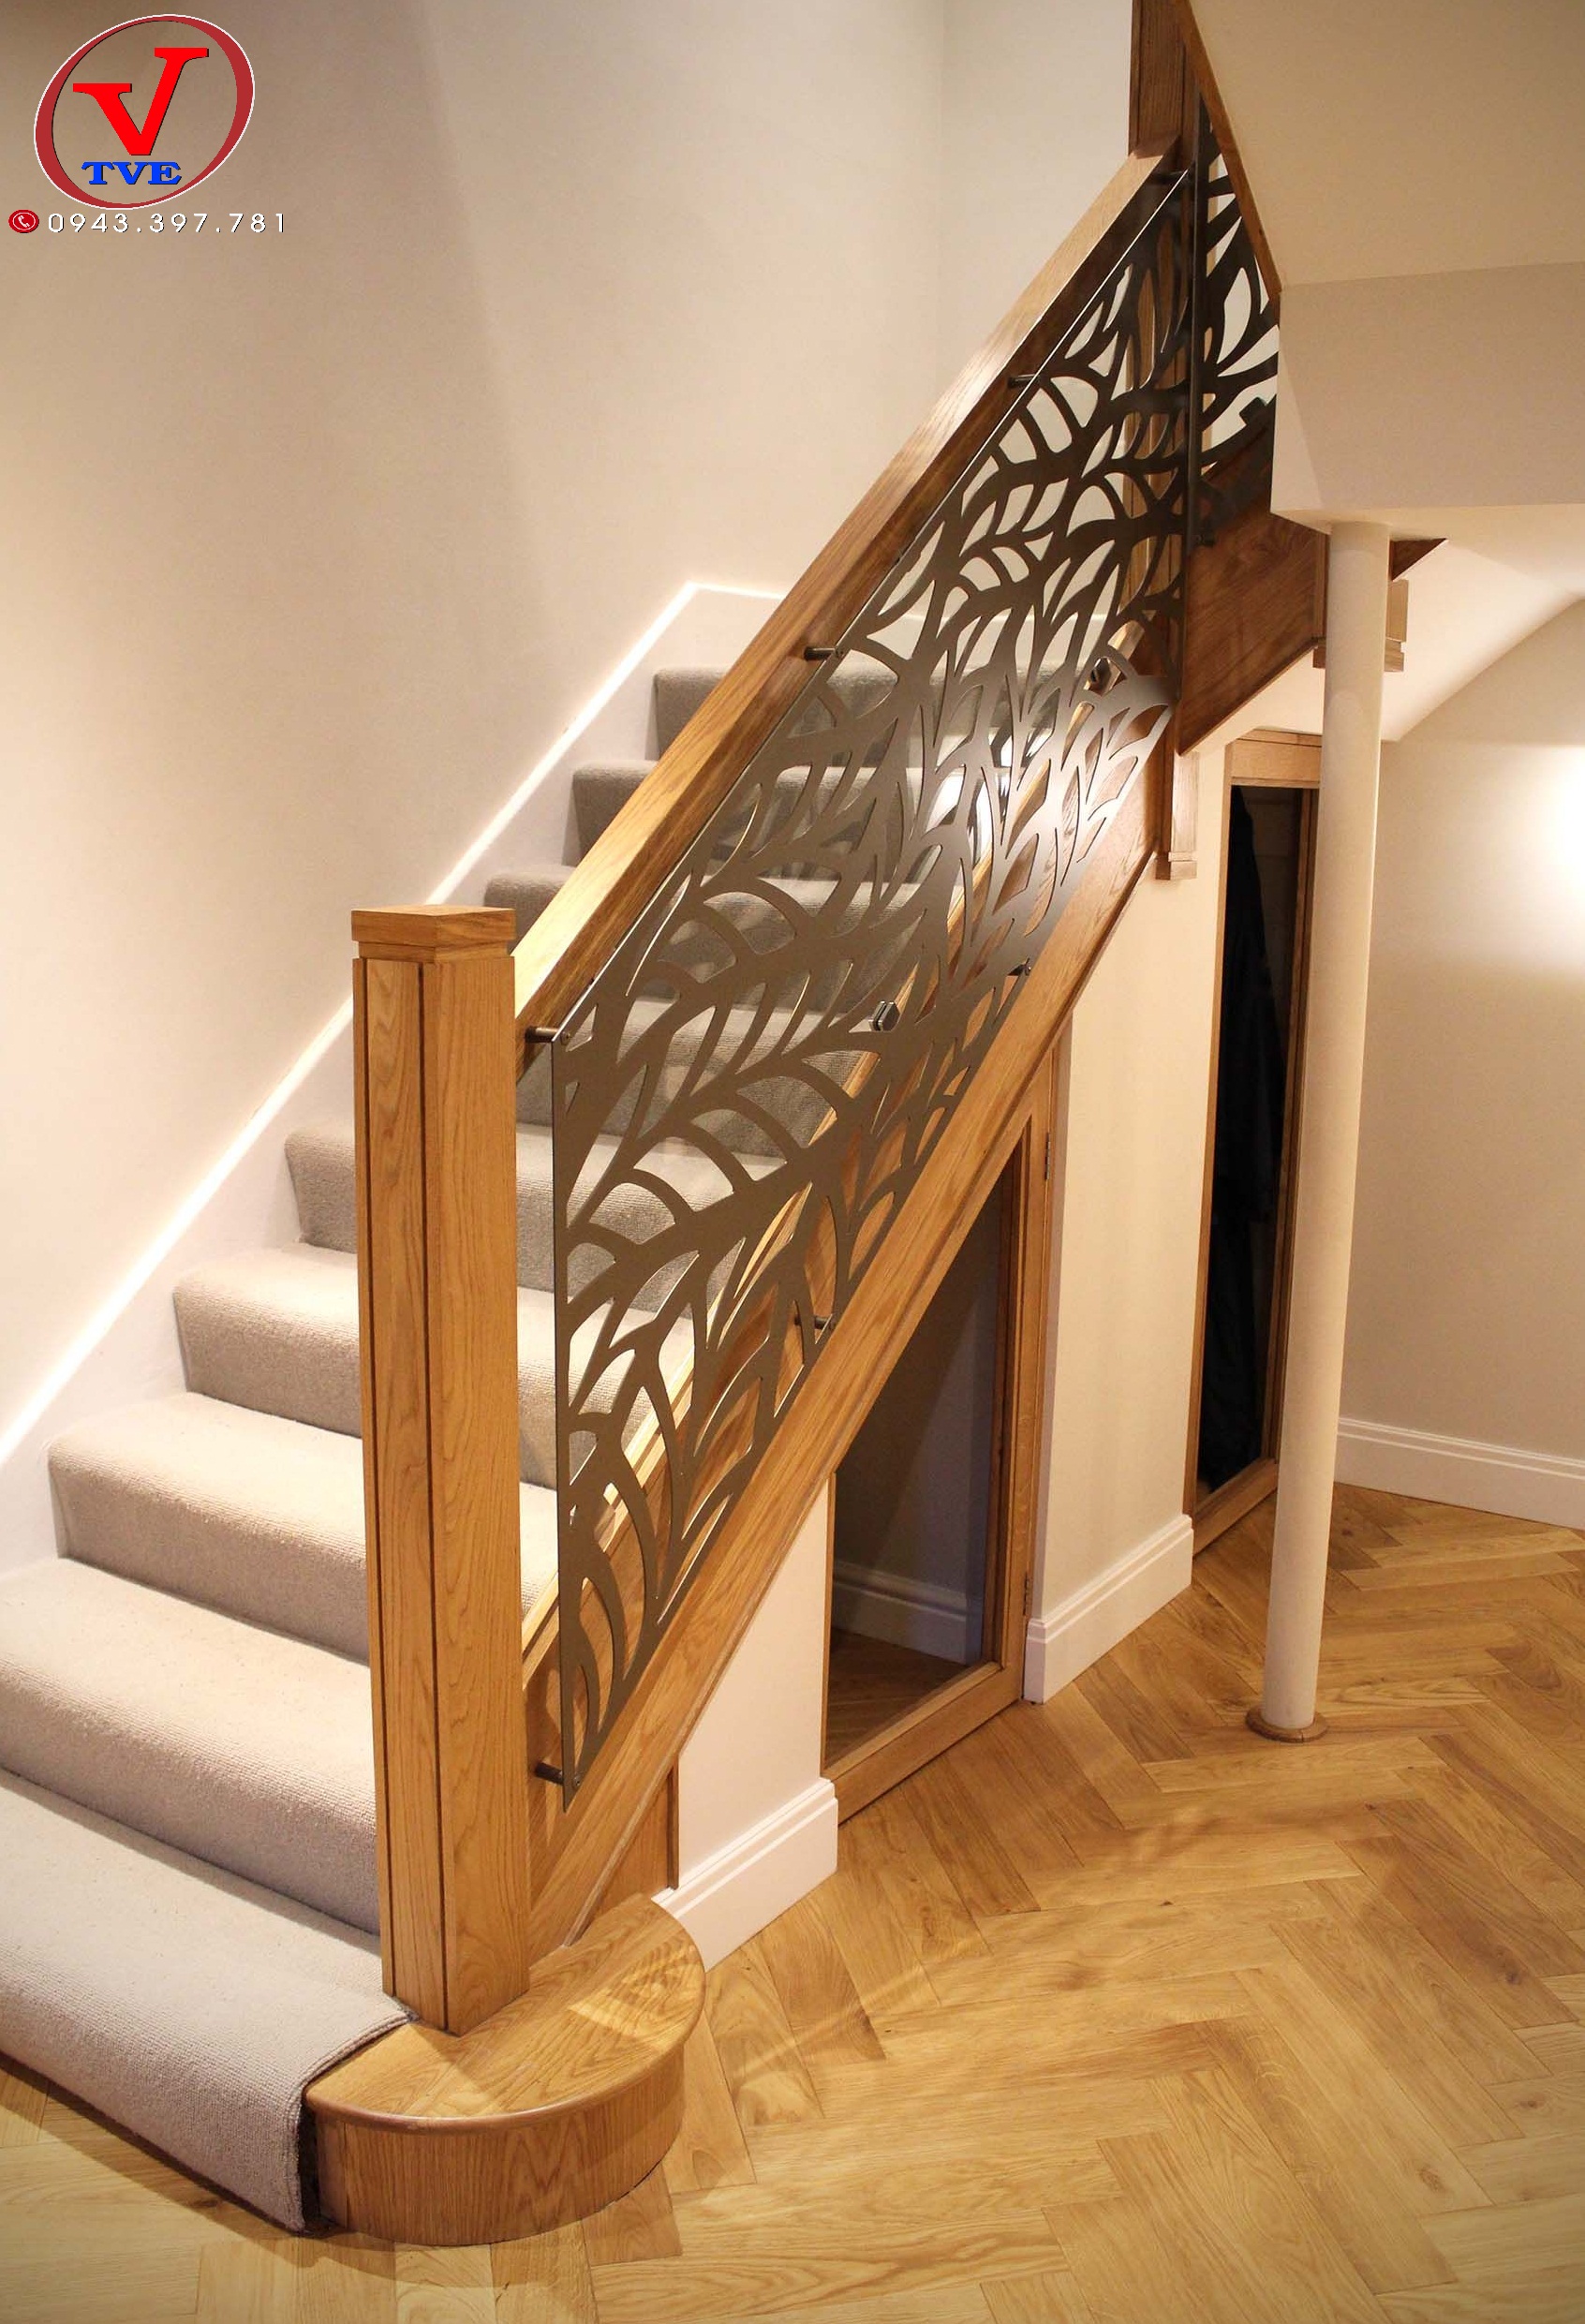 Cầu thang sắt cnc kết hợp gỗ ấn tượng